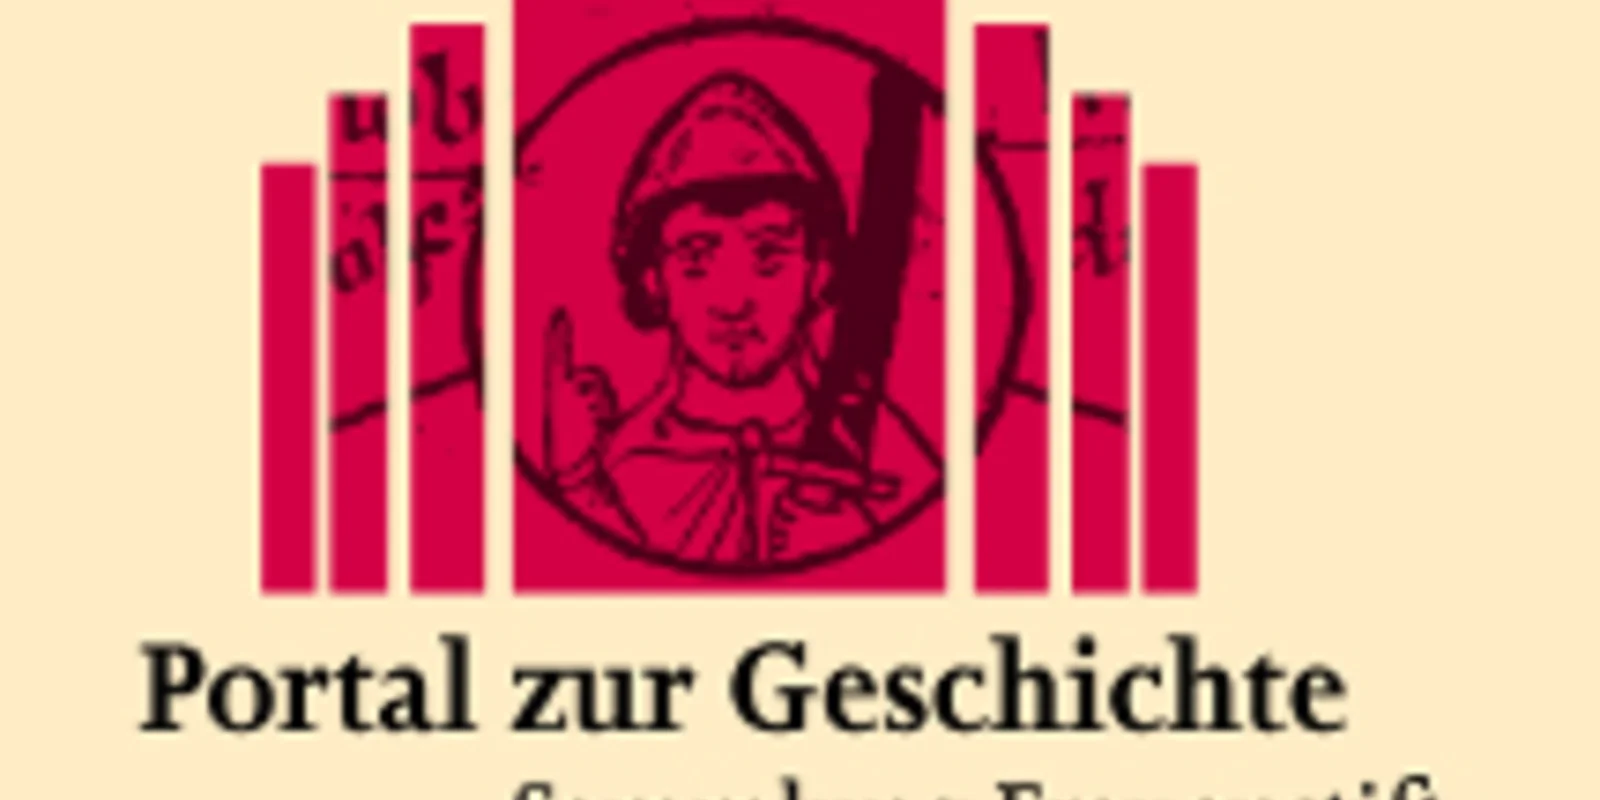 Das Logo des Portal zur Geschichte Sammlung Frauenstift Gandersheim in rot auf gelbem Grund